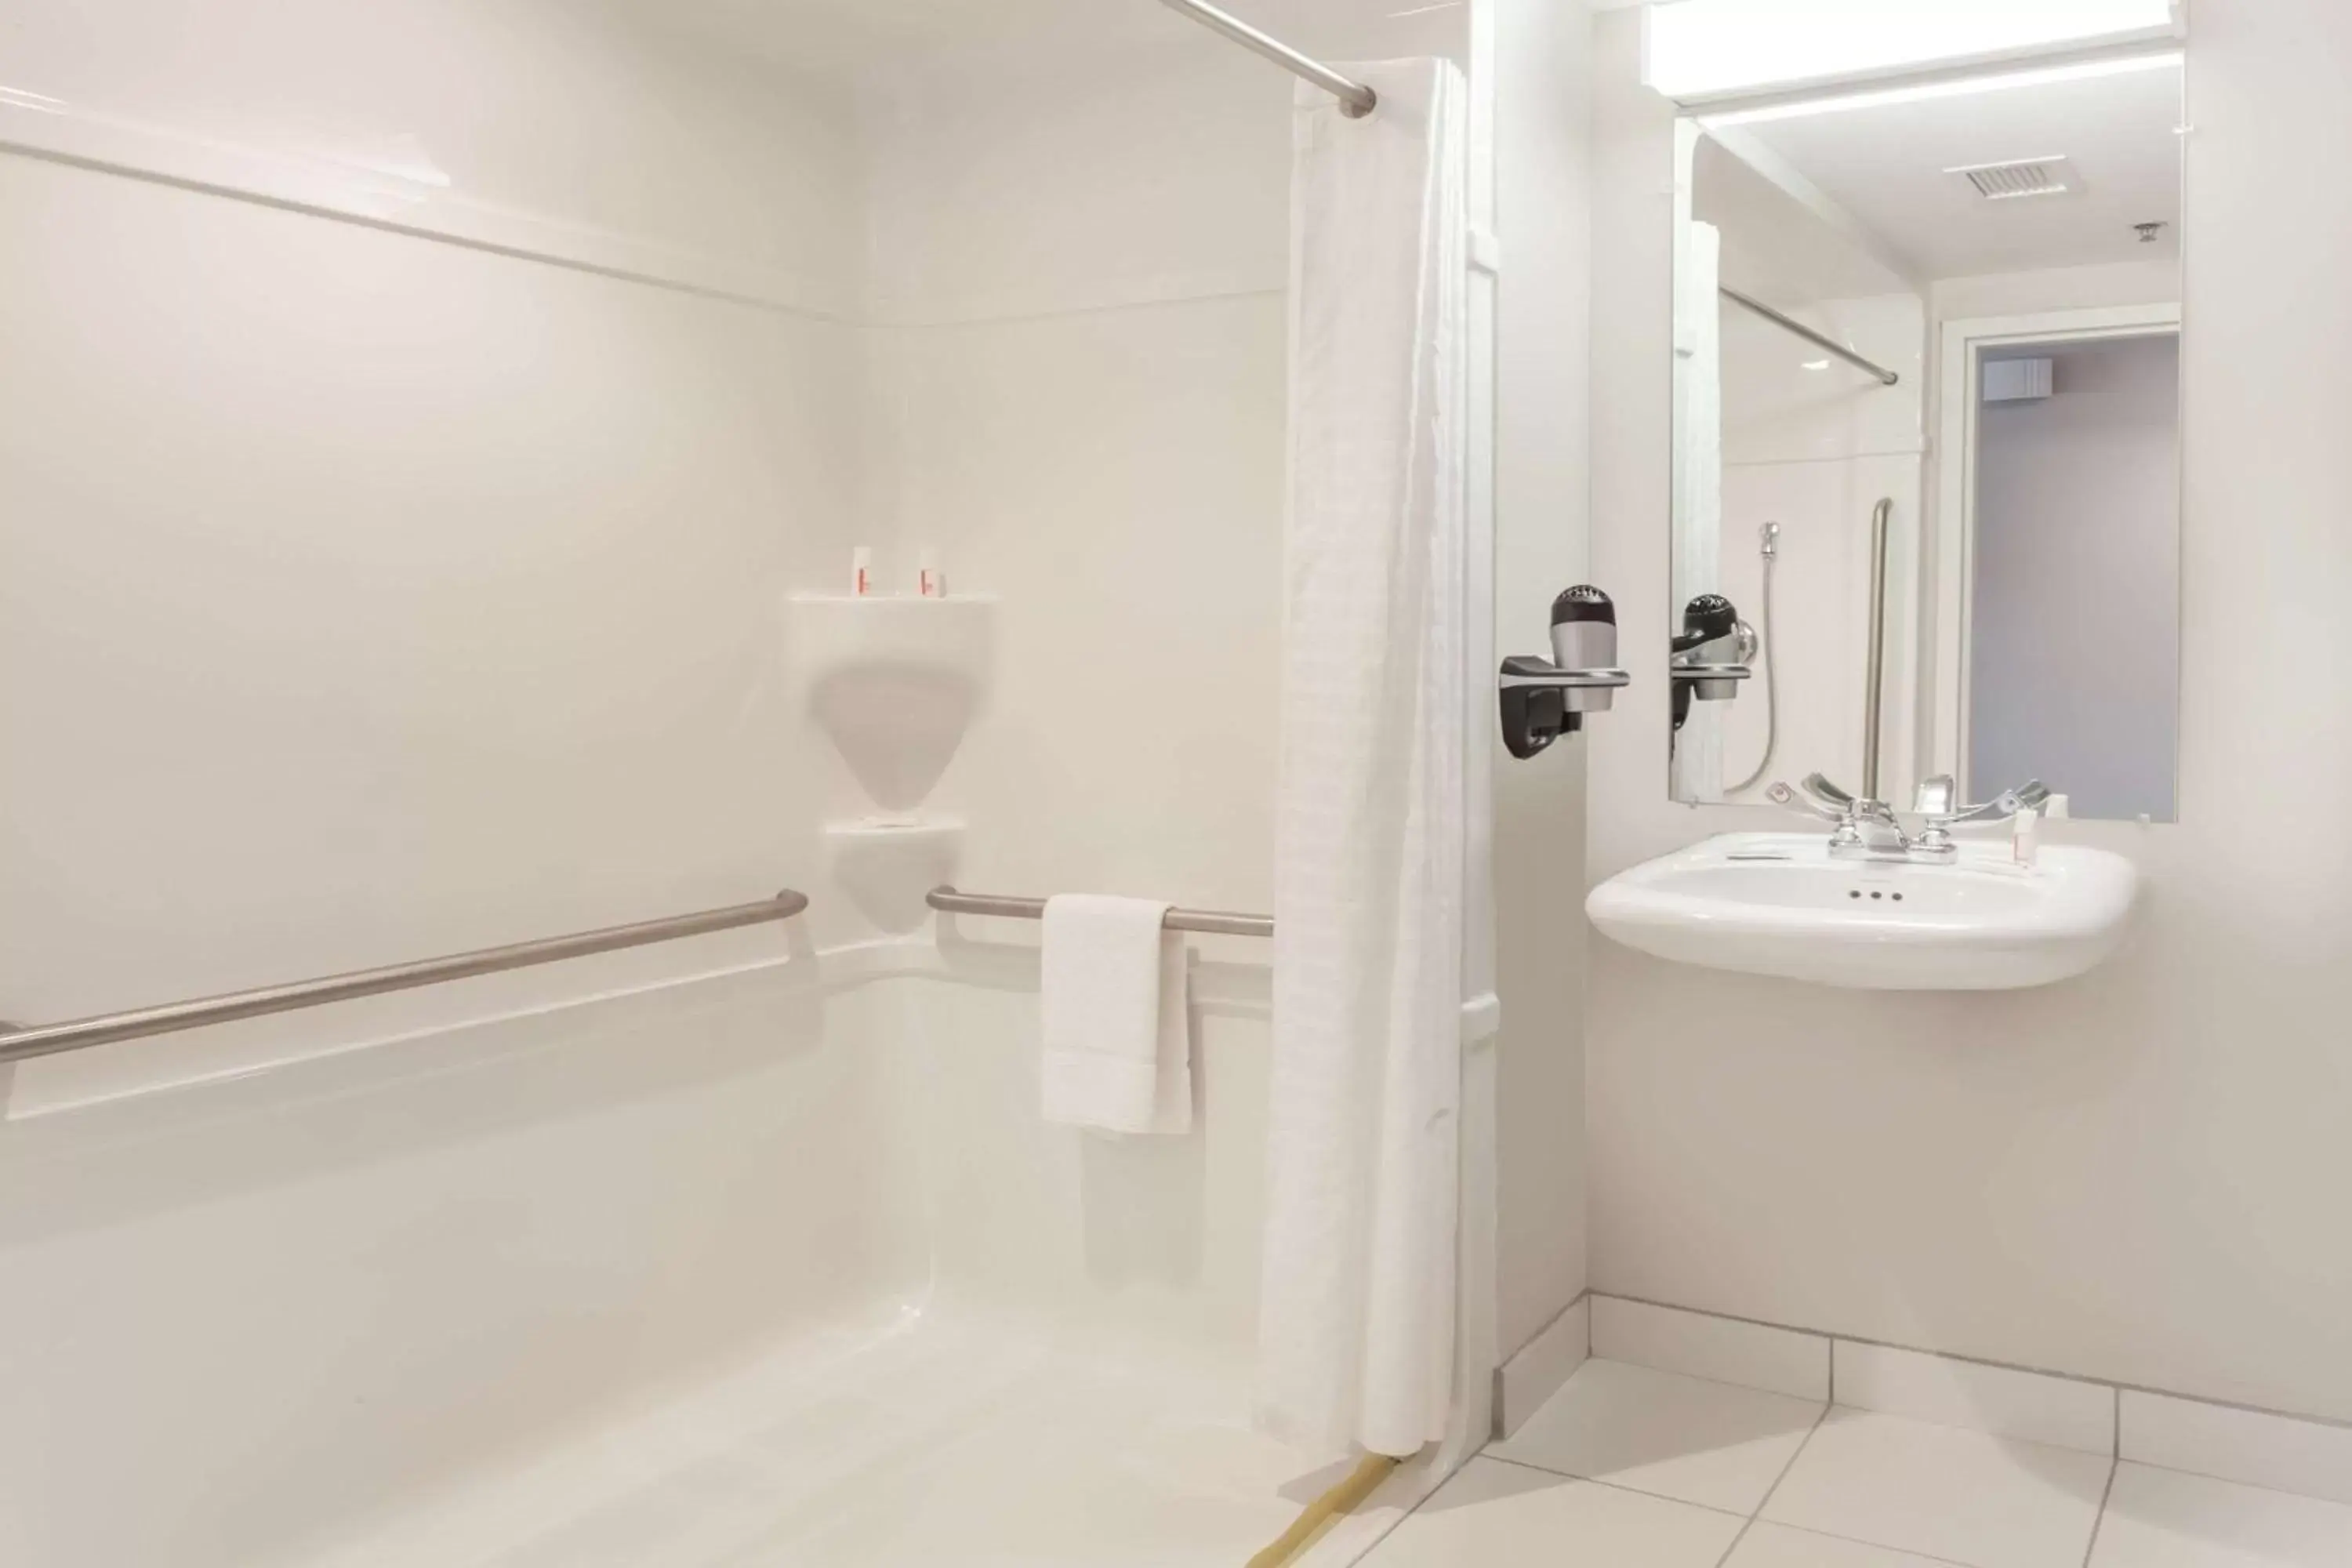 Shower, Bathroom in Microtel Inn & Suites Sault Ste. Marie